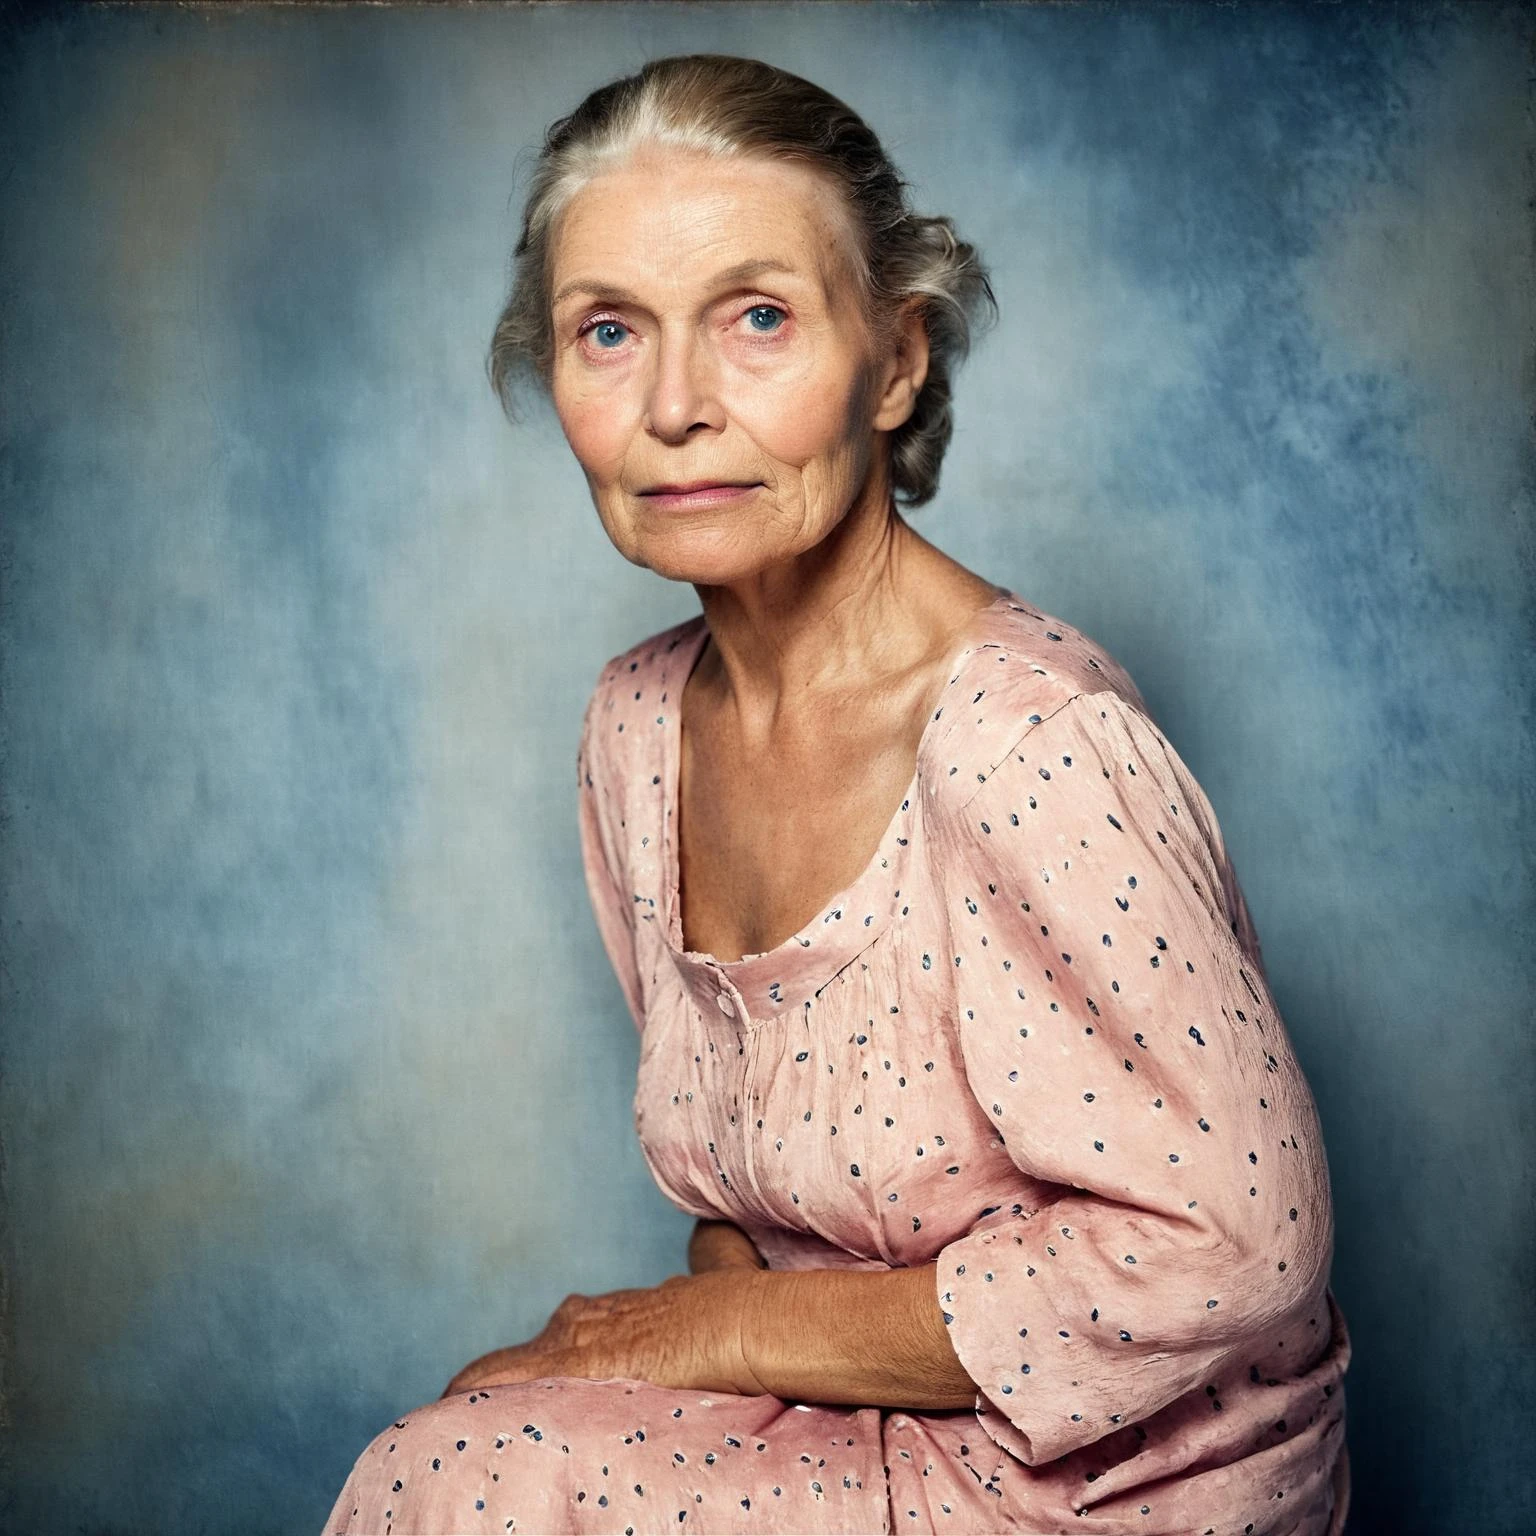 原始照片, 一個美麗的 70 歲女人的肖像, 滿臉皺紋, 粉色夏季連身裙, 全銳利, 詳細的臉部, 藍眼睛, (高細節肌膚:1.2), 8k超高清, 單眼相機, 柔和的燈光, 高品質, 膠片顆粒, Fujifilm XT3 他坐在光線昏暗的黑暗室裡, 明暗對比風格